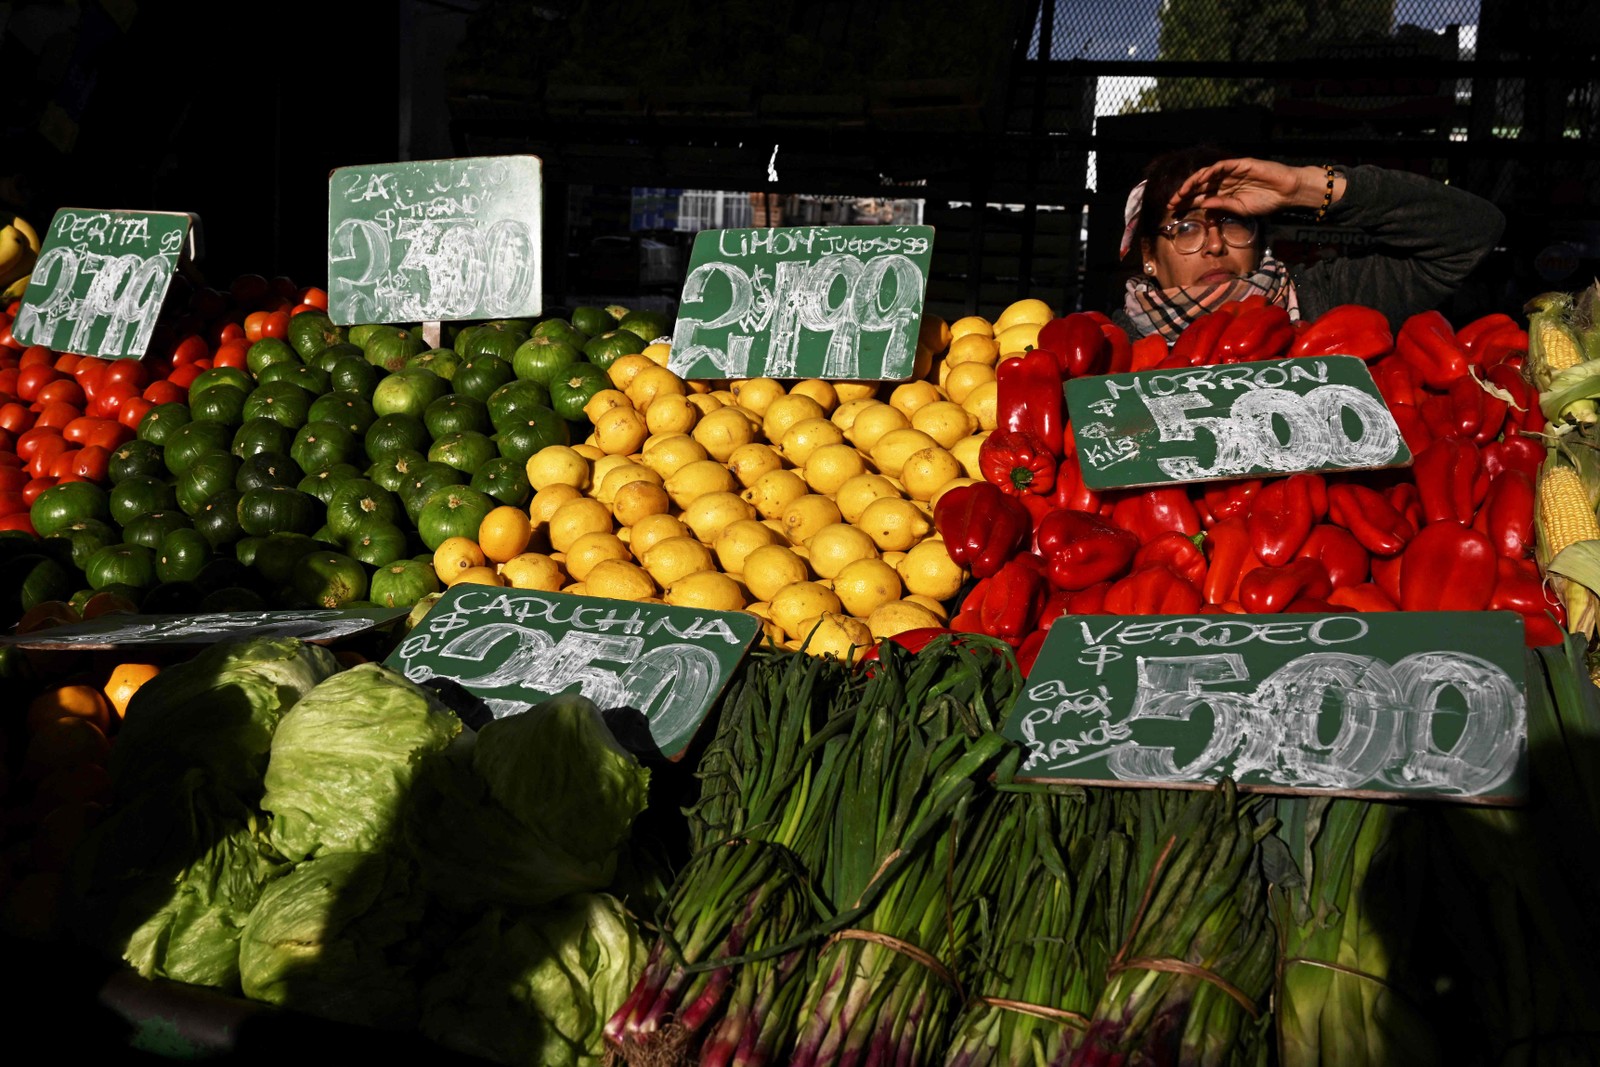 Uma mulher vende frutas e verduras no Mercado Central de Buenos Aires. Peso argentino sofre constante desvalorização em relação ao dólar americano. — Foto: Luis ROBAYO / AFP